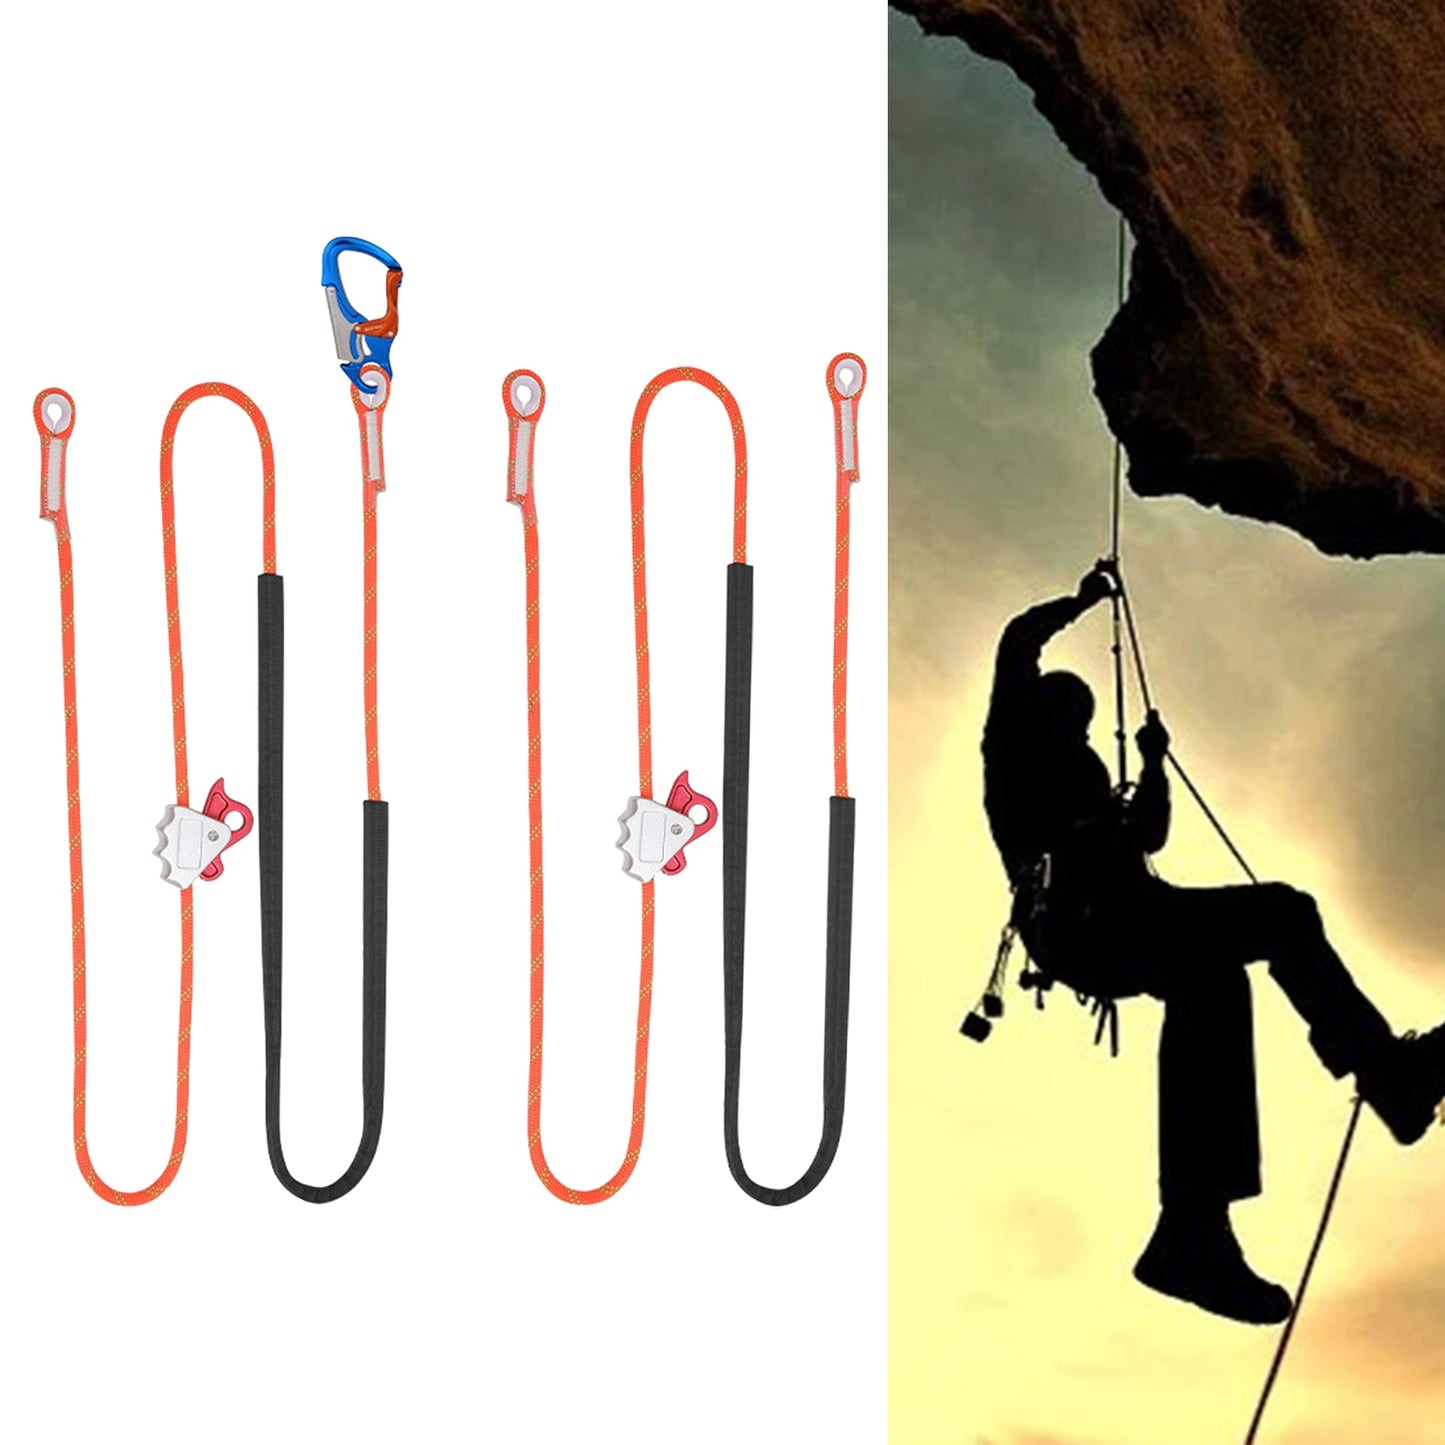 Cuerda de Seguridad para escalada, cuerda de posicionamiento ajustable, resistente a Cortes